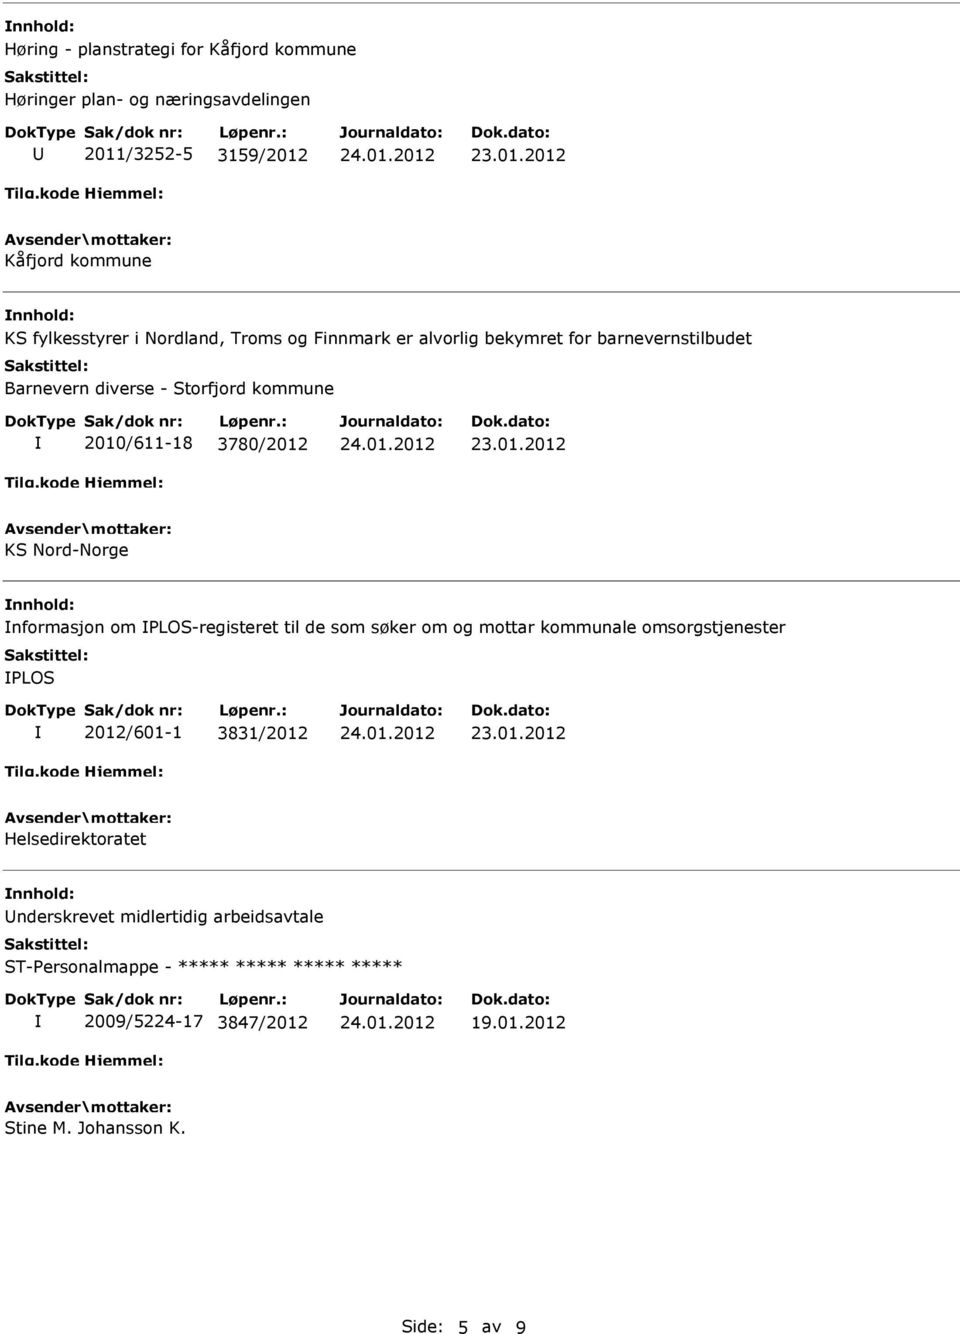 2010/611-18 3780/2012 KS Nord-Norge nformasjon om PLOS-registeret til de som søker om og mottar kommunale omsorgstjenester PLOS